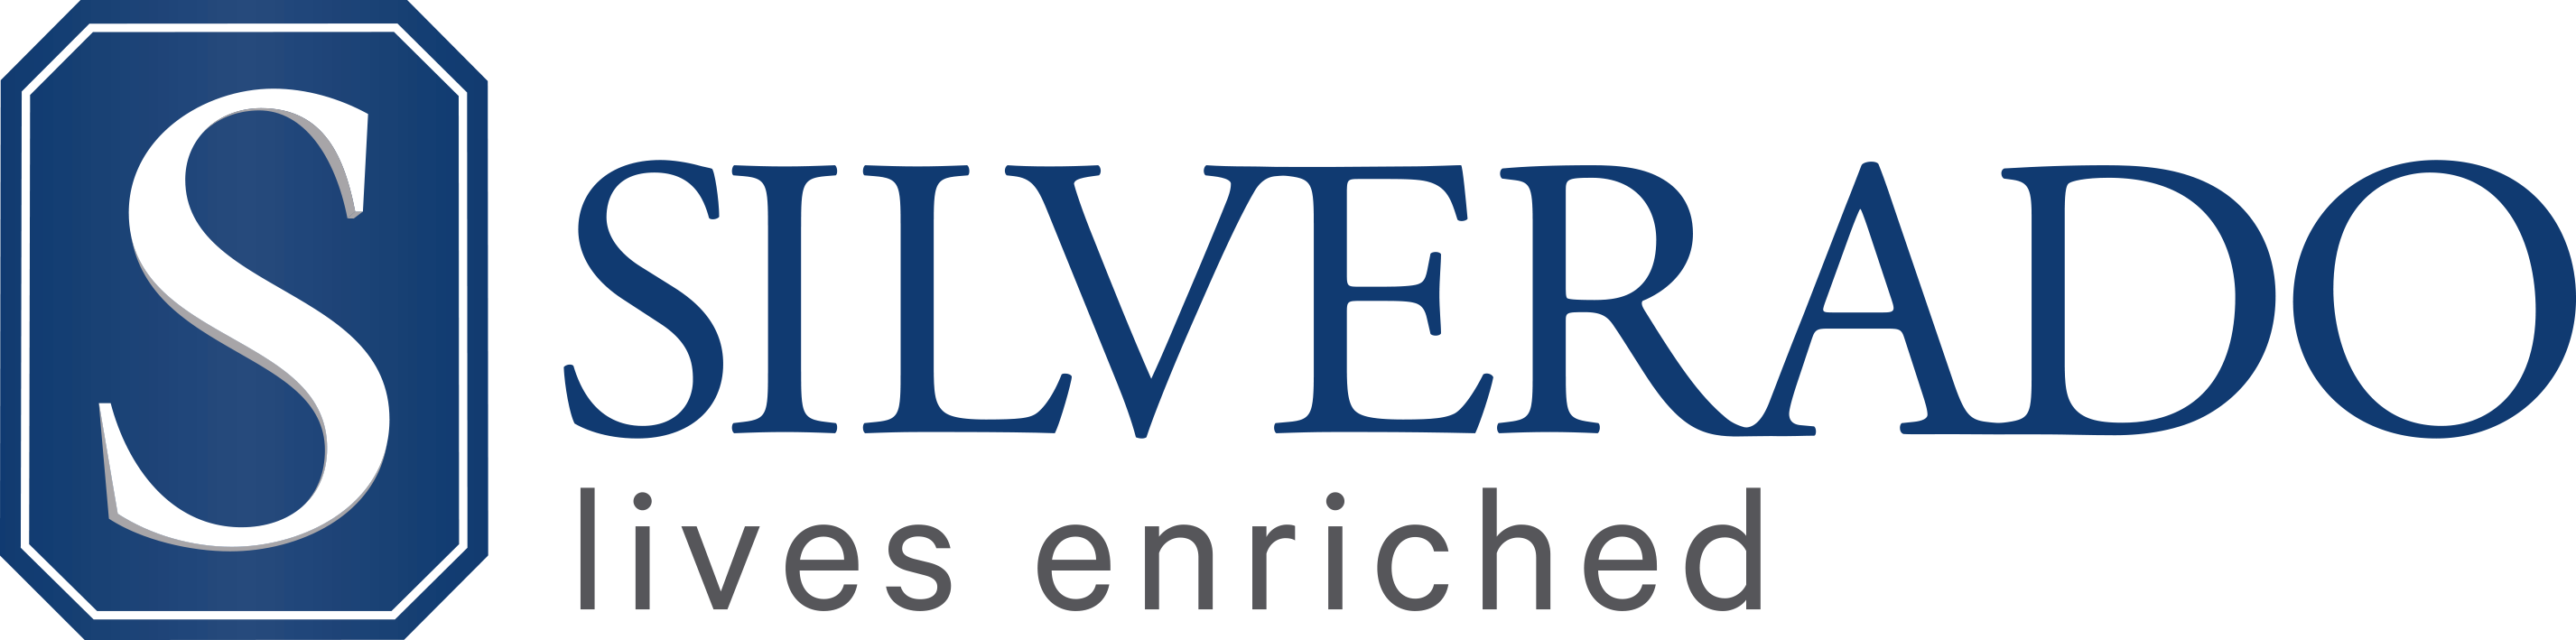 Silverado Senior Living Company Logo